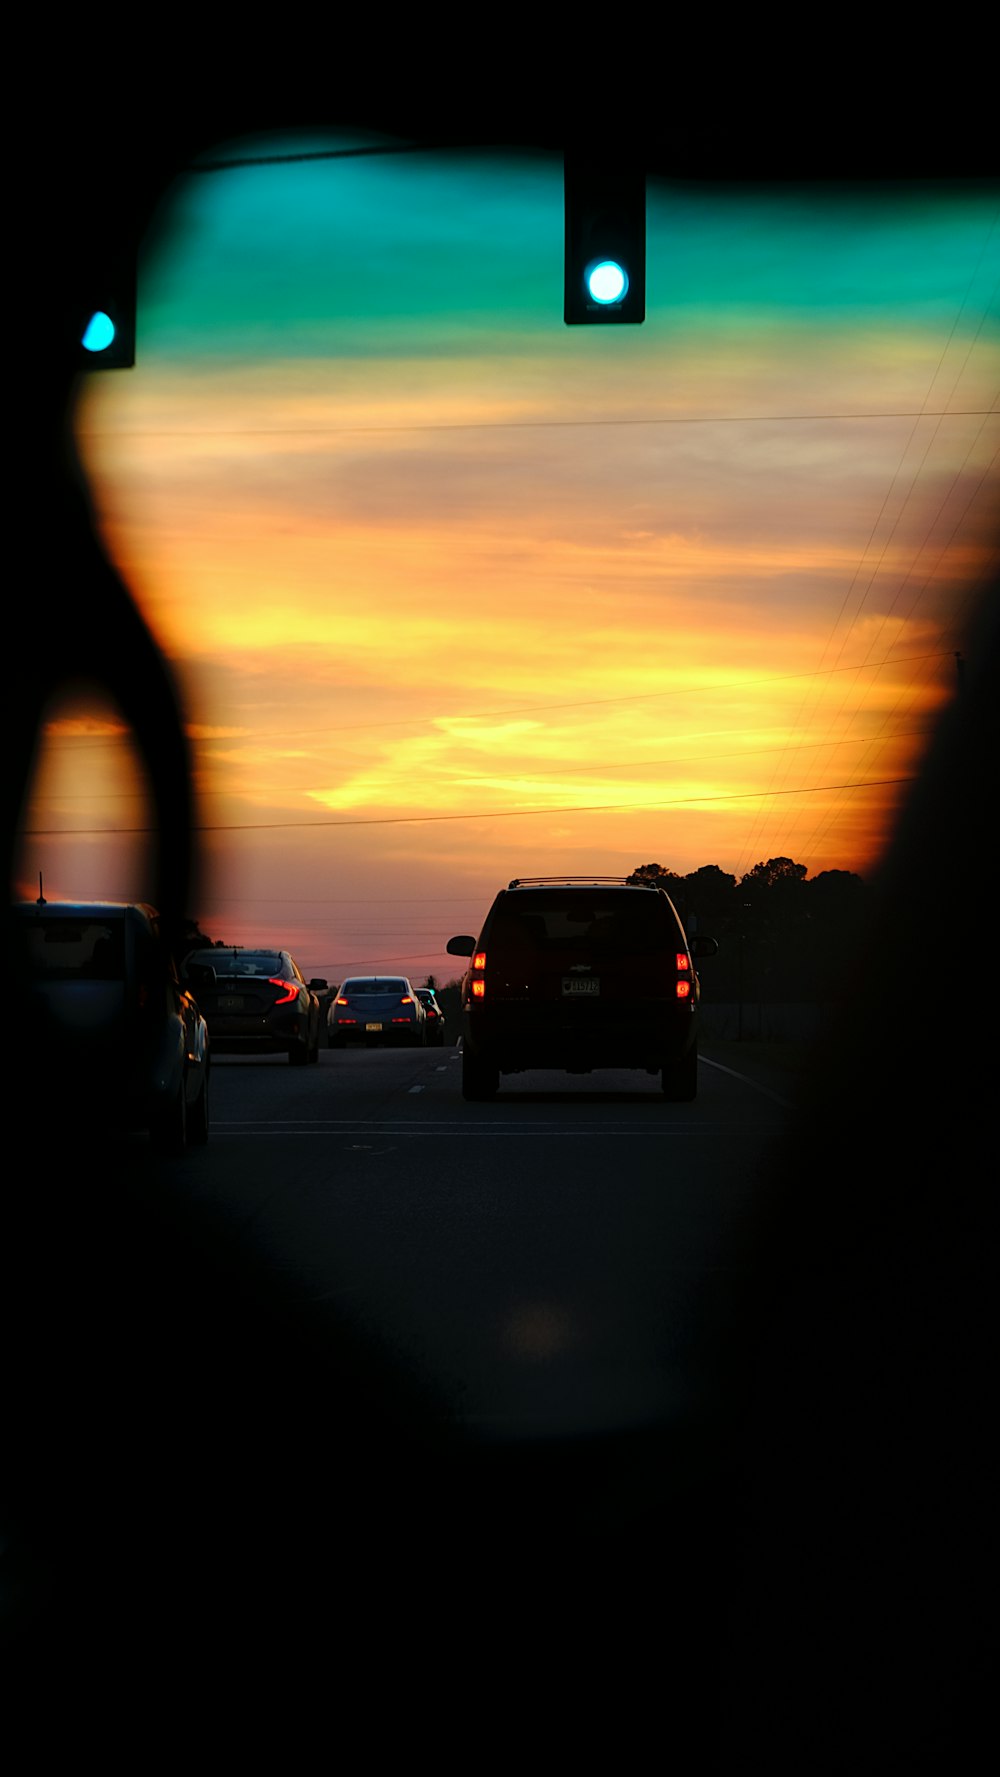 um pôr do sol visto através do espelho retrovisor de um carro